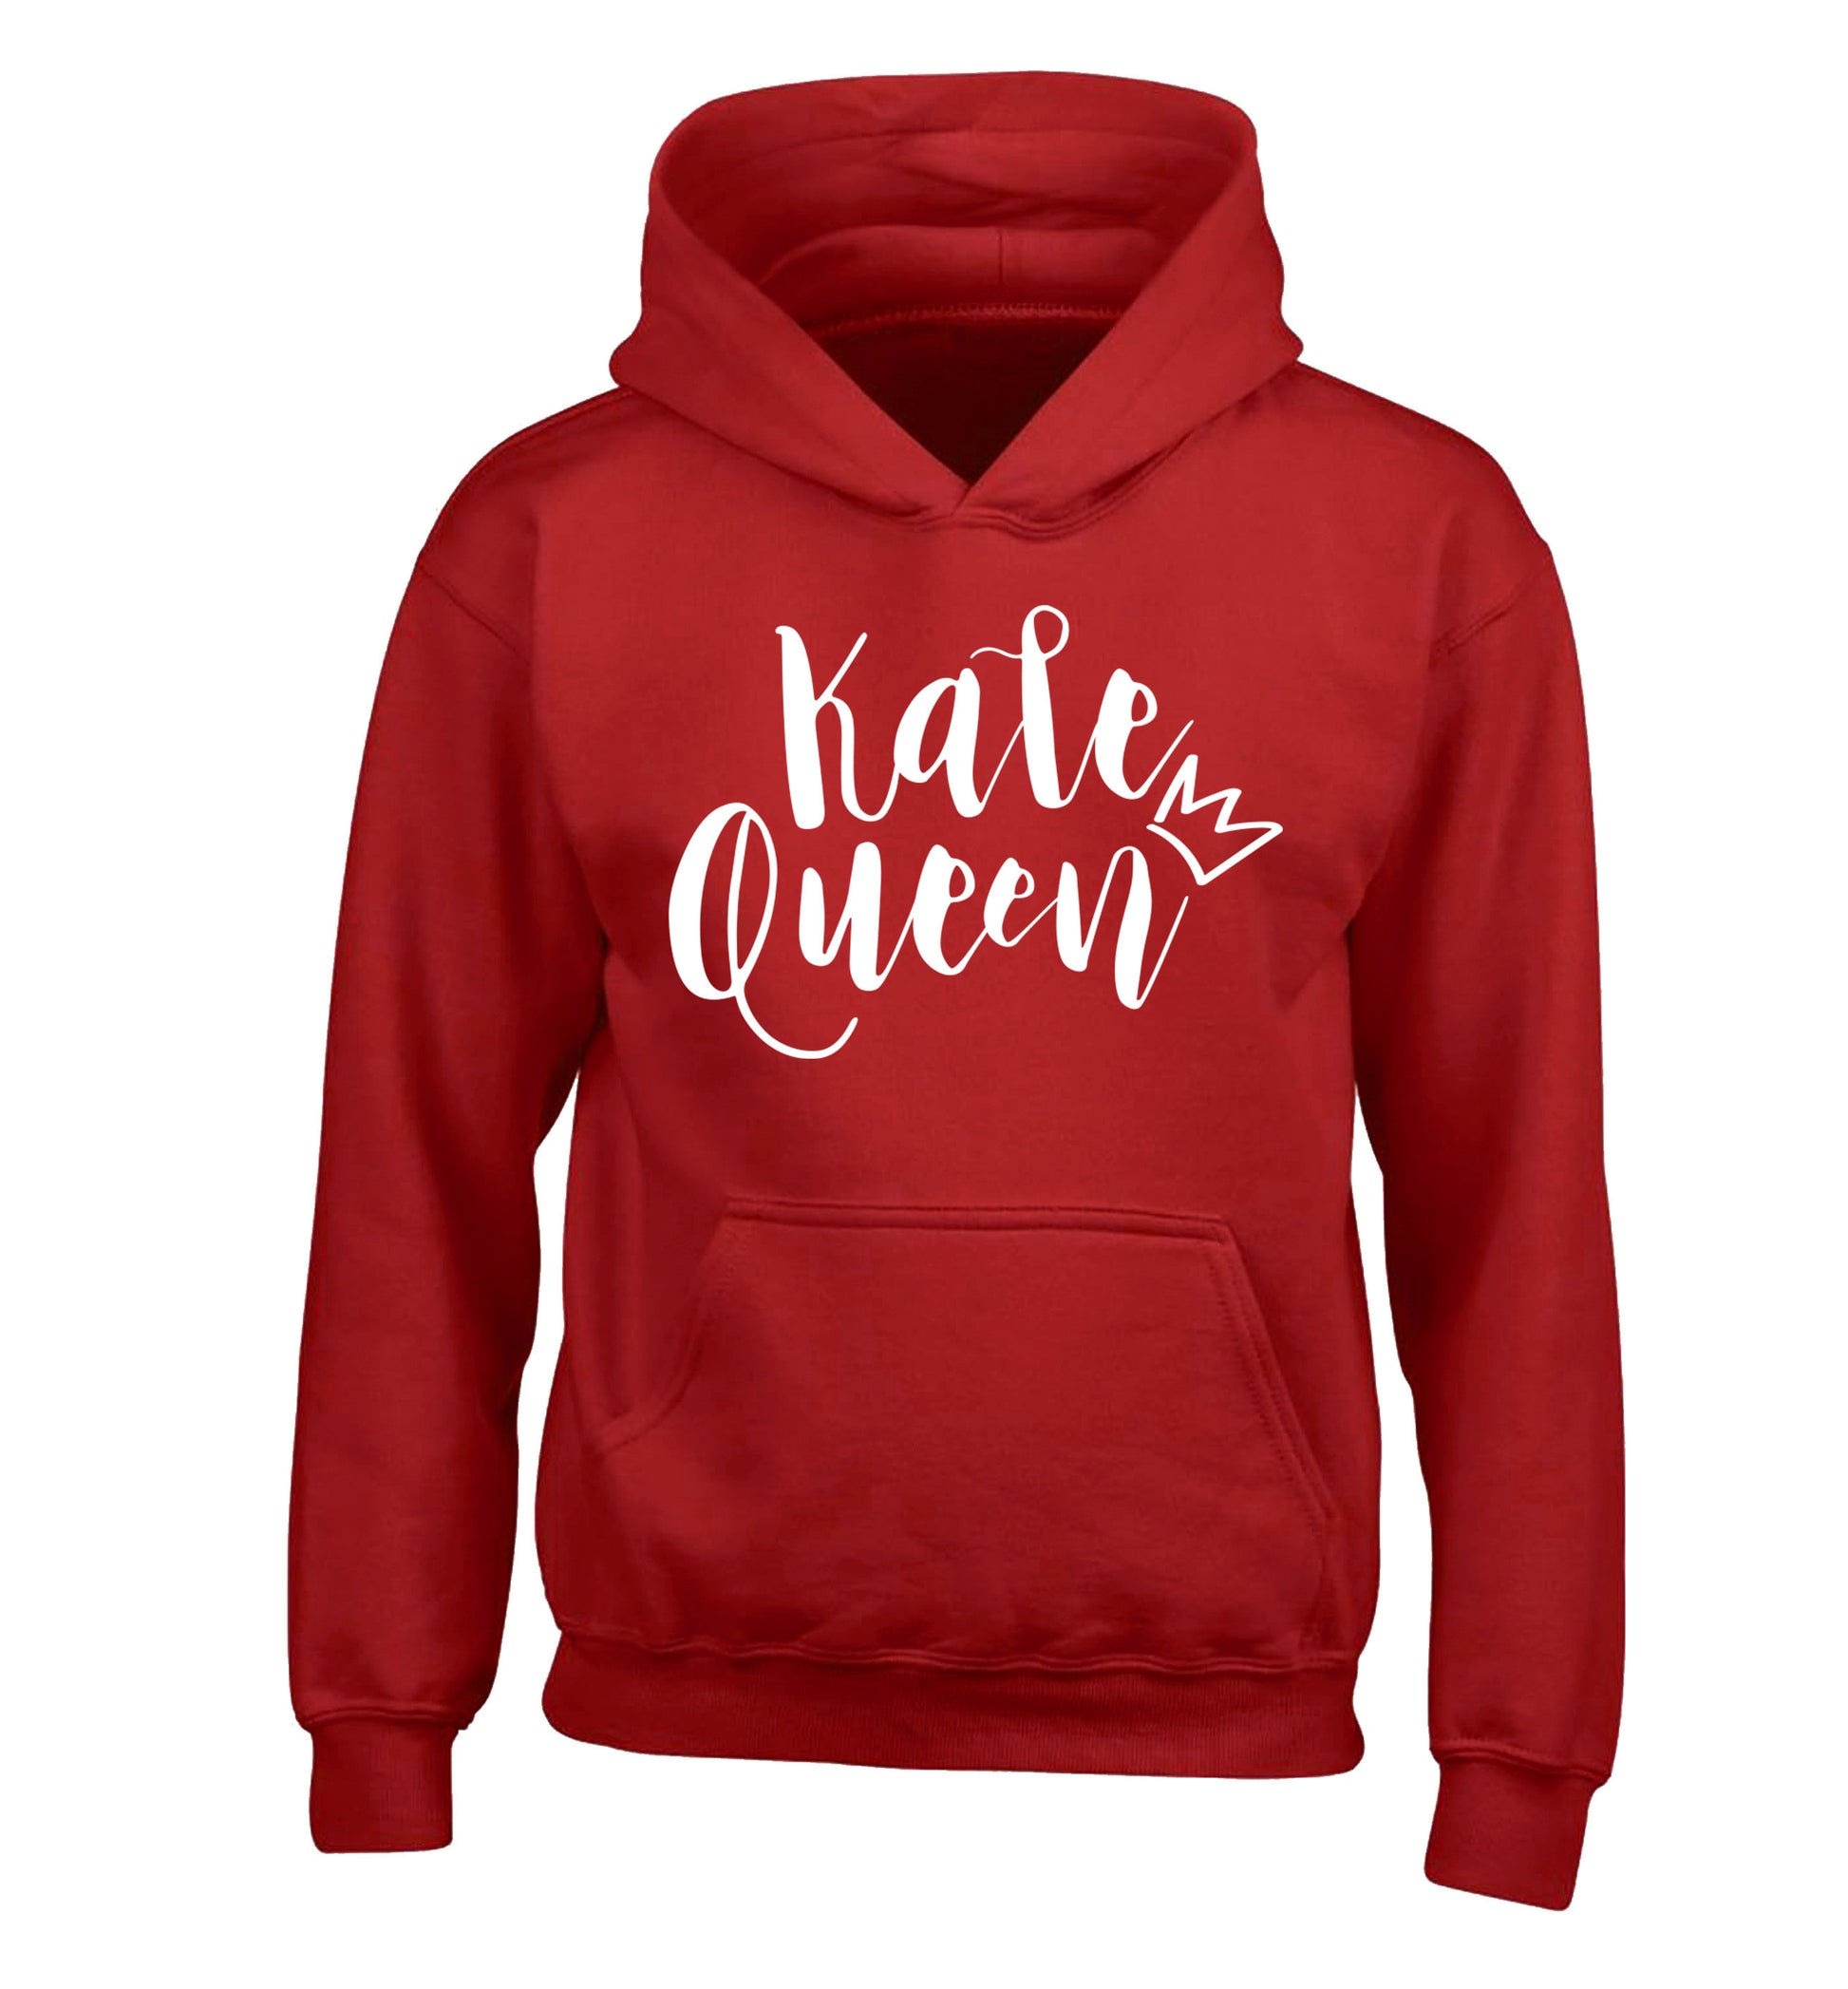 Kale Queen children's red hoodie 12-14 Years